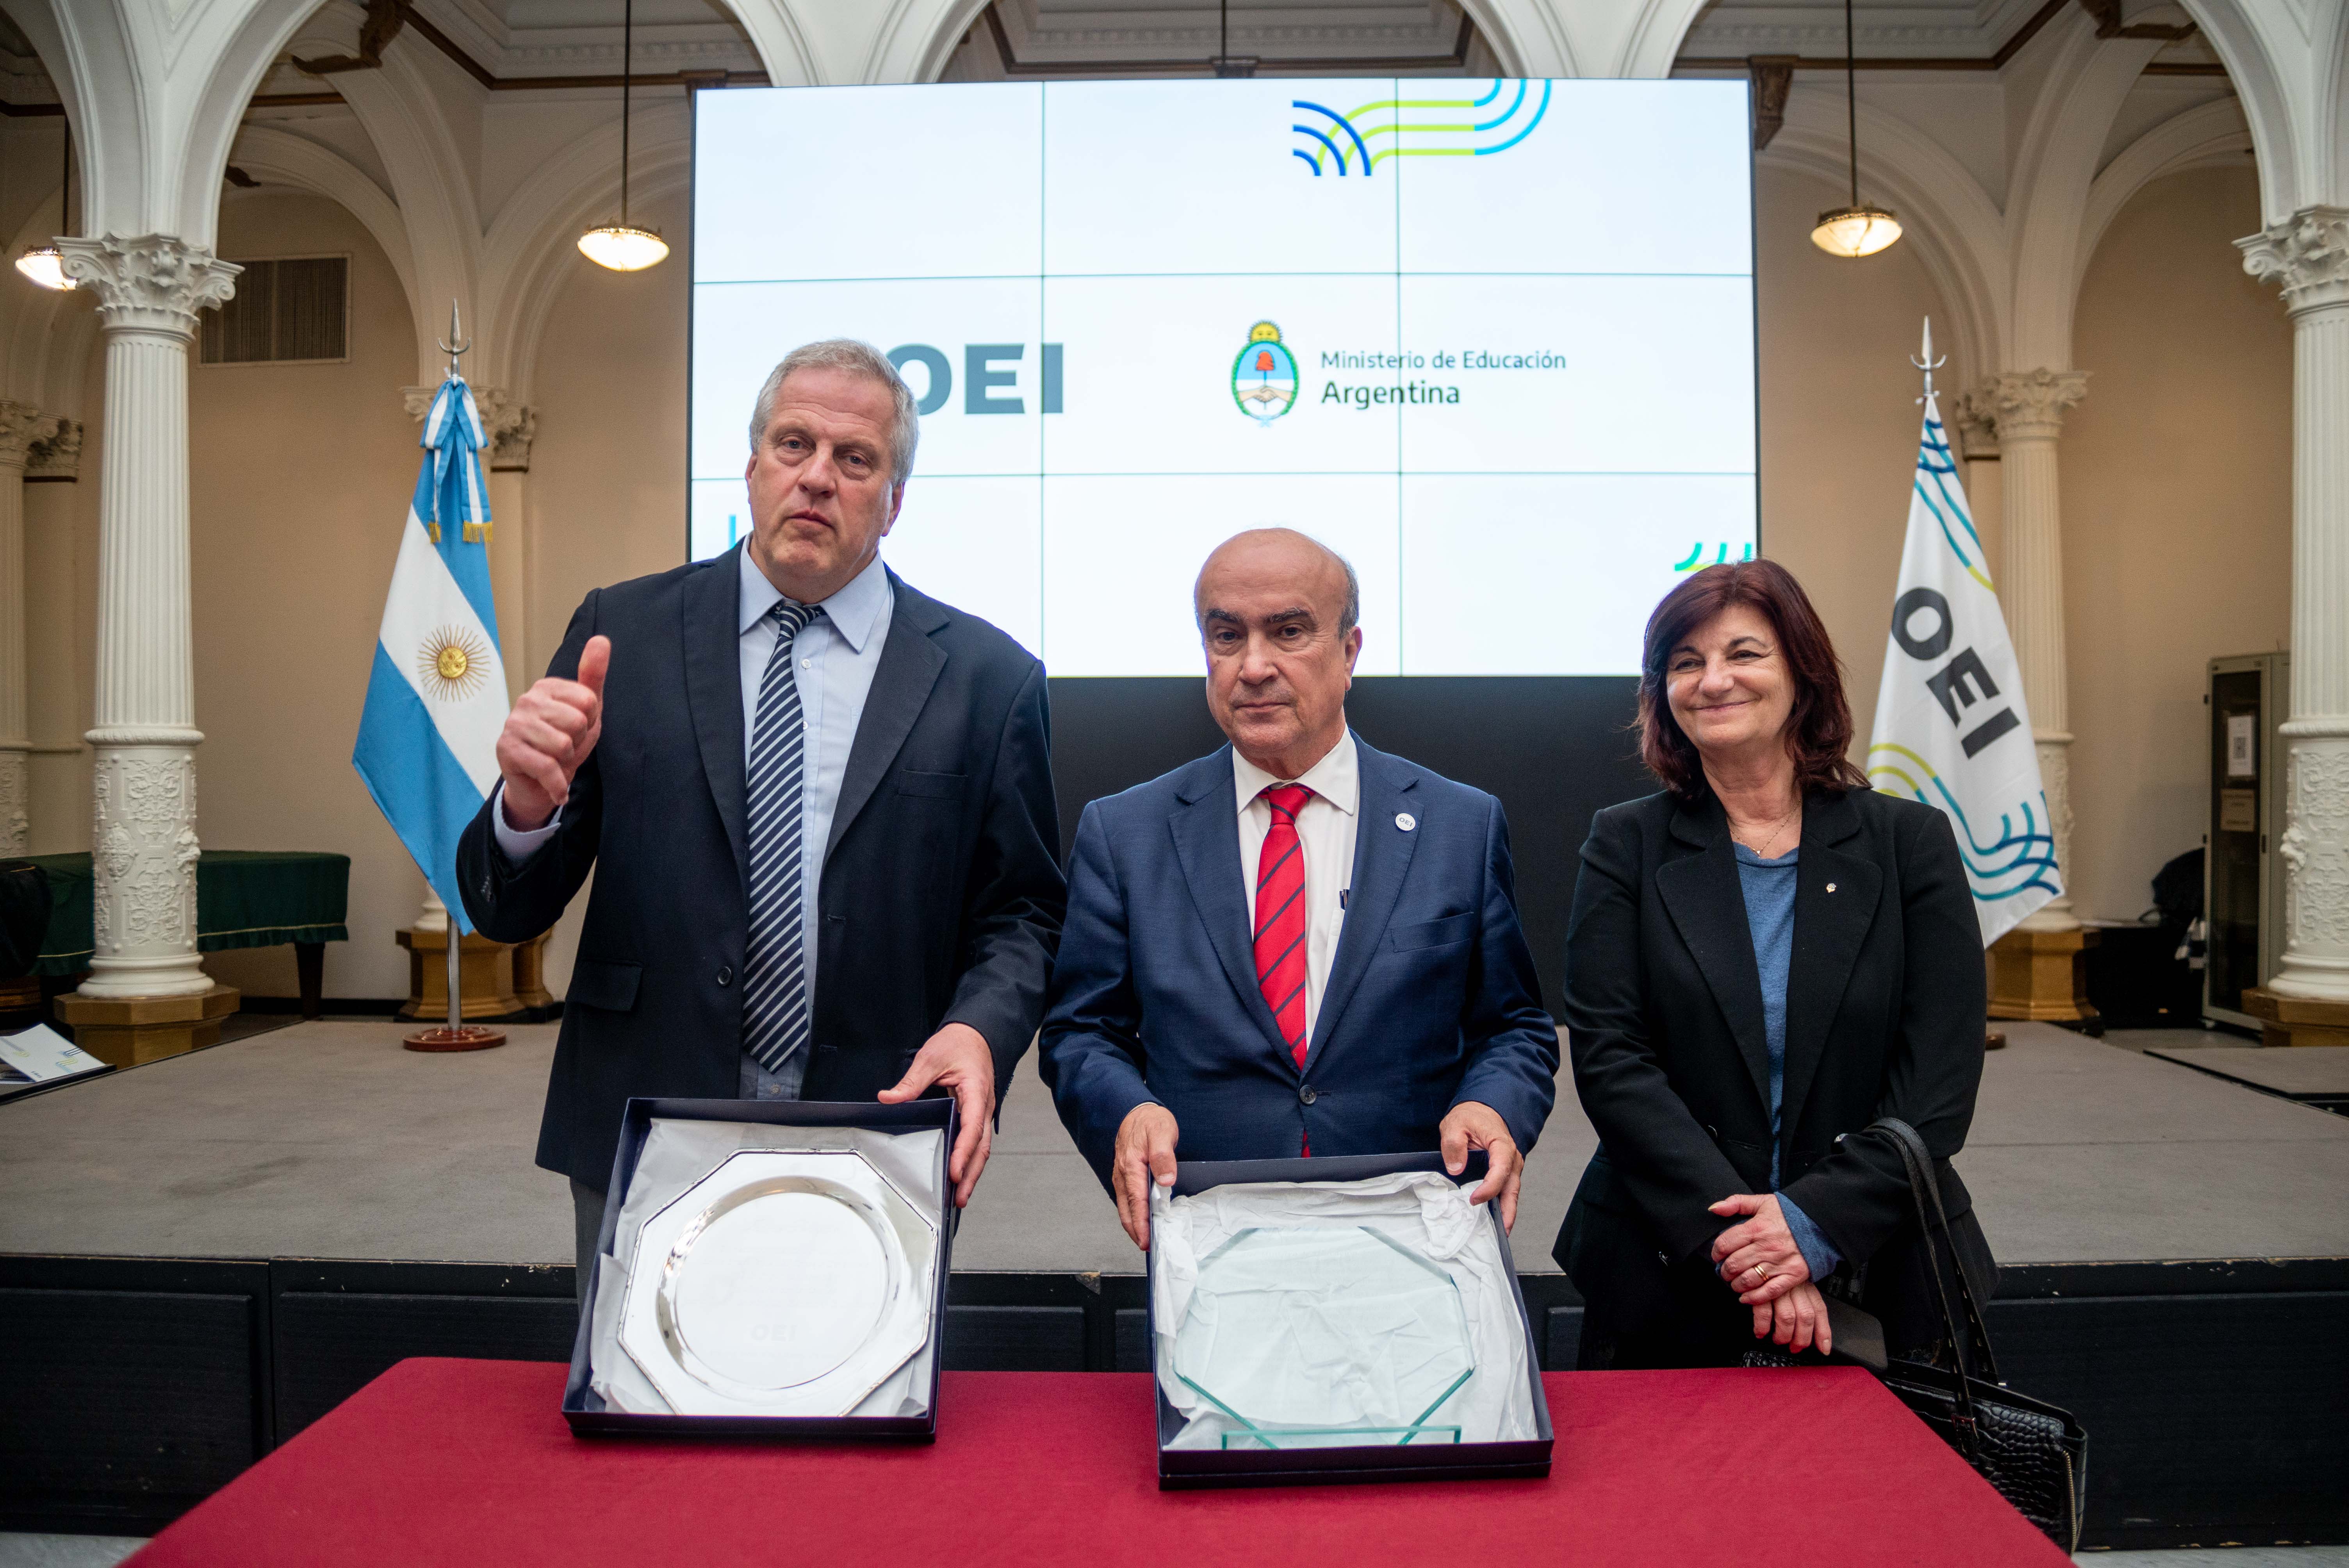 Governo argentino reconhece o trabalho do Secretário-Geral da Organização de Estados Ibero-Americanos, Mariano Jabonero